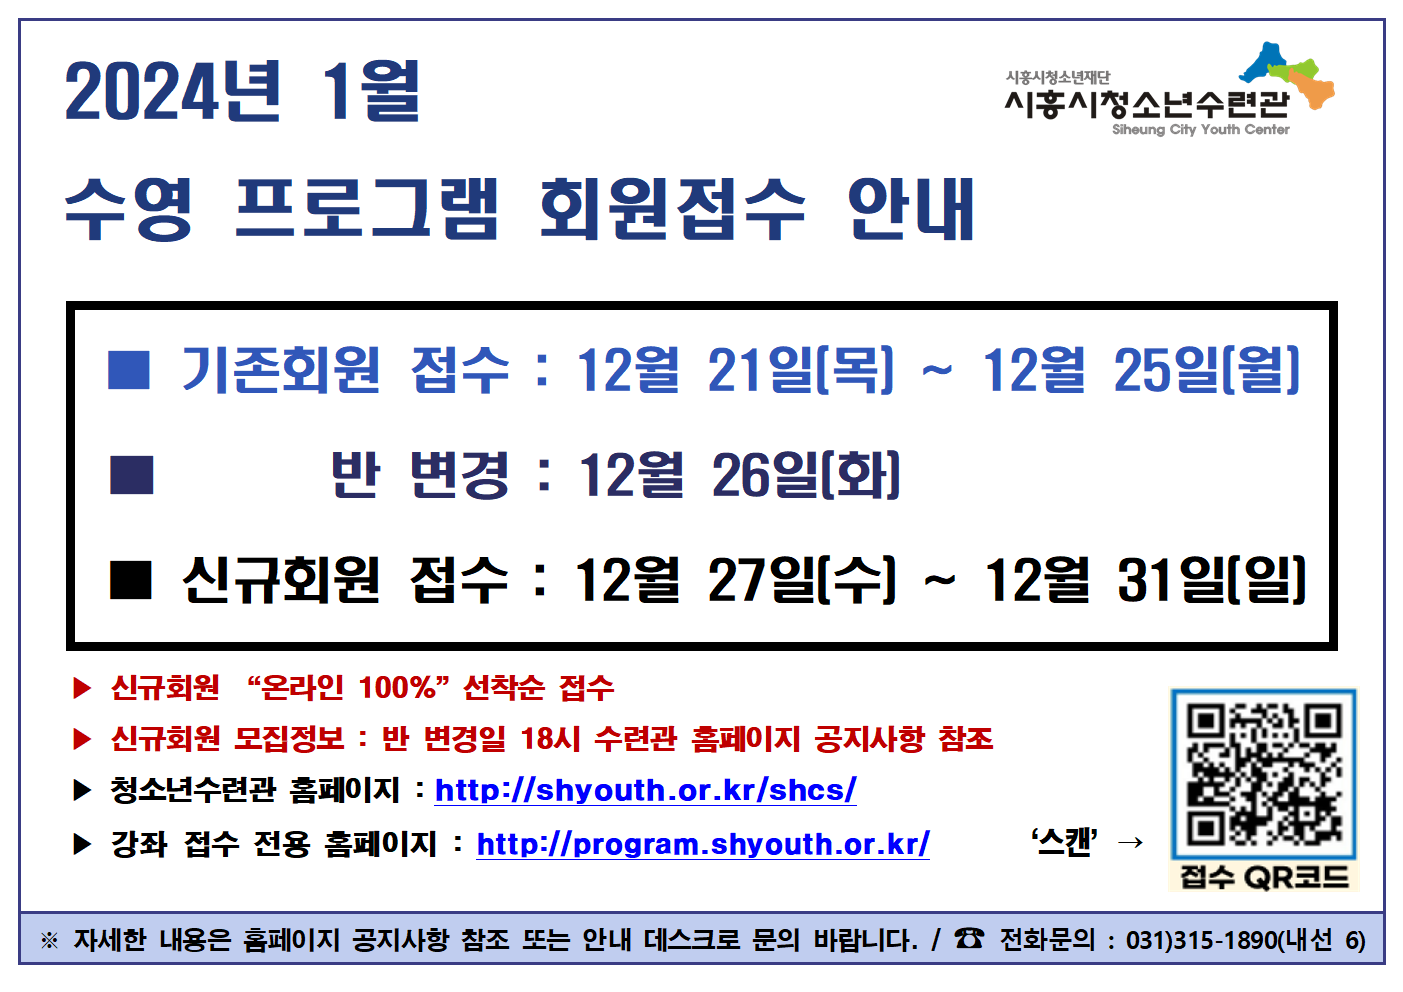 기존접수 배너(24년 1월)001.png